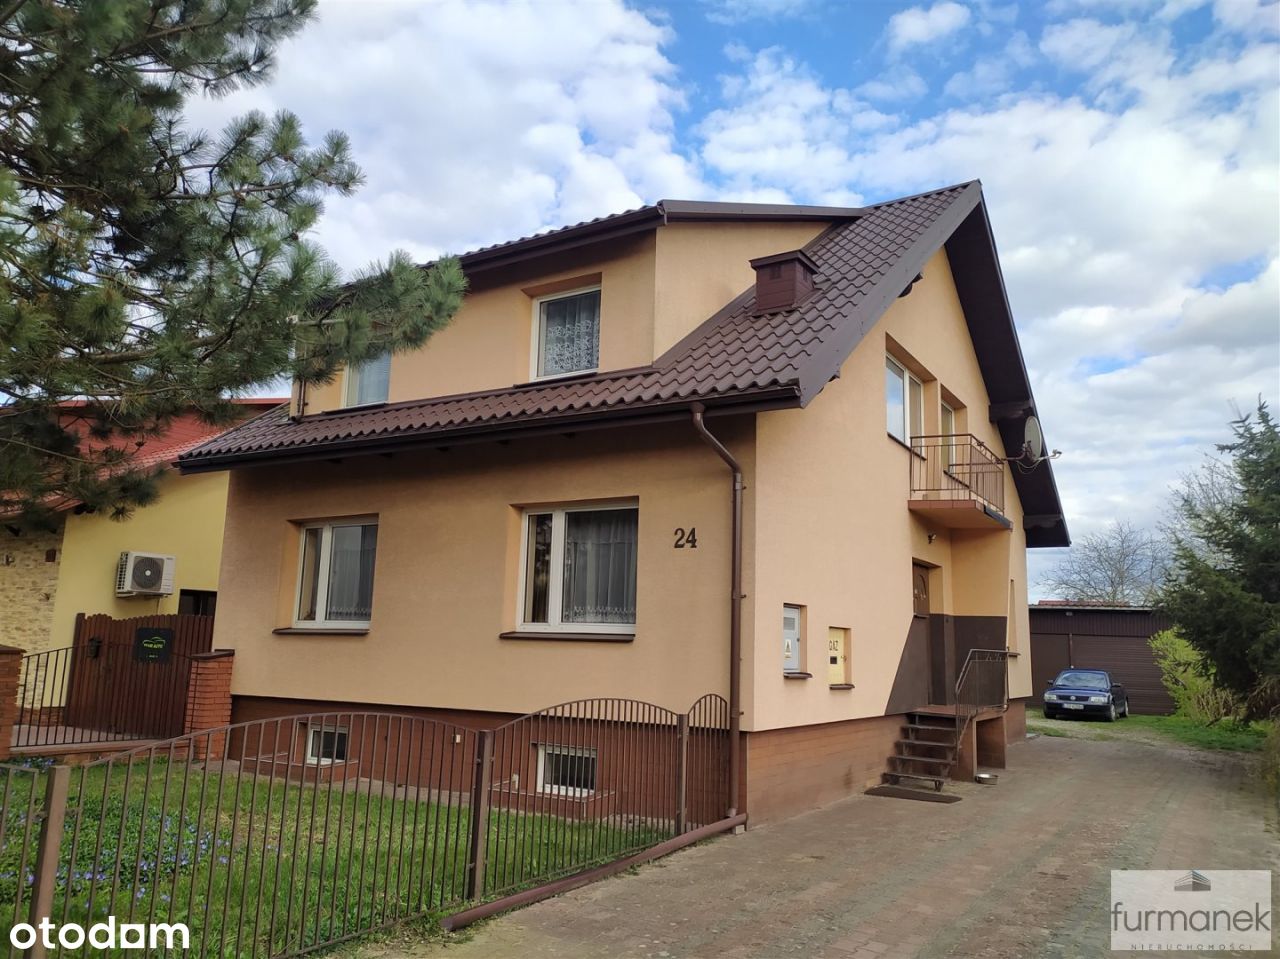 Funkcjonalny dom blisko biłgorajskiego rynku